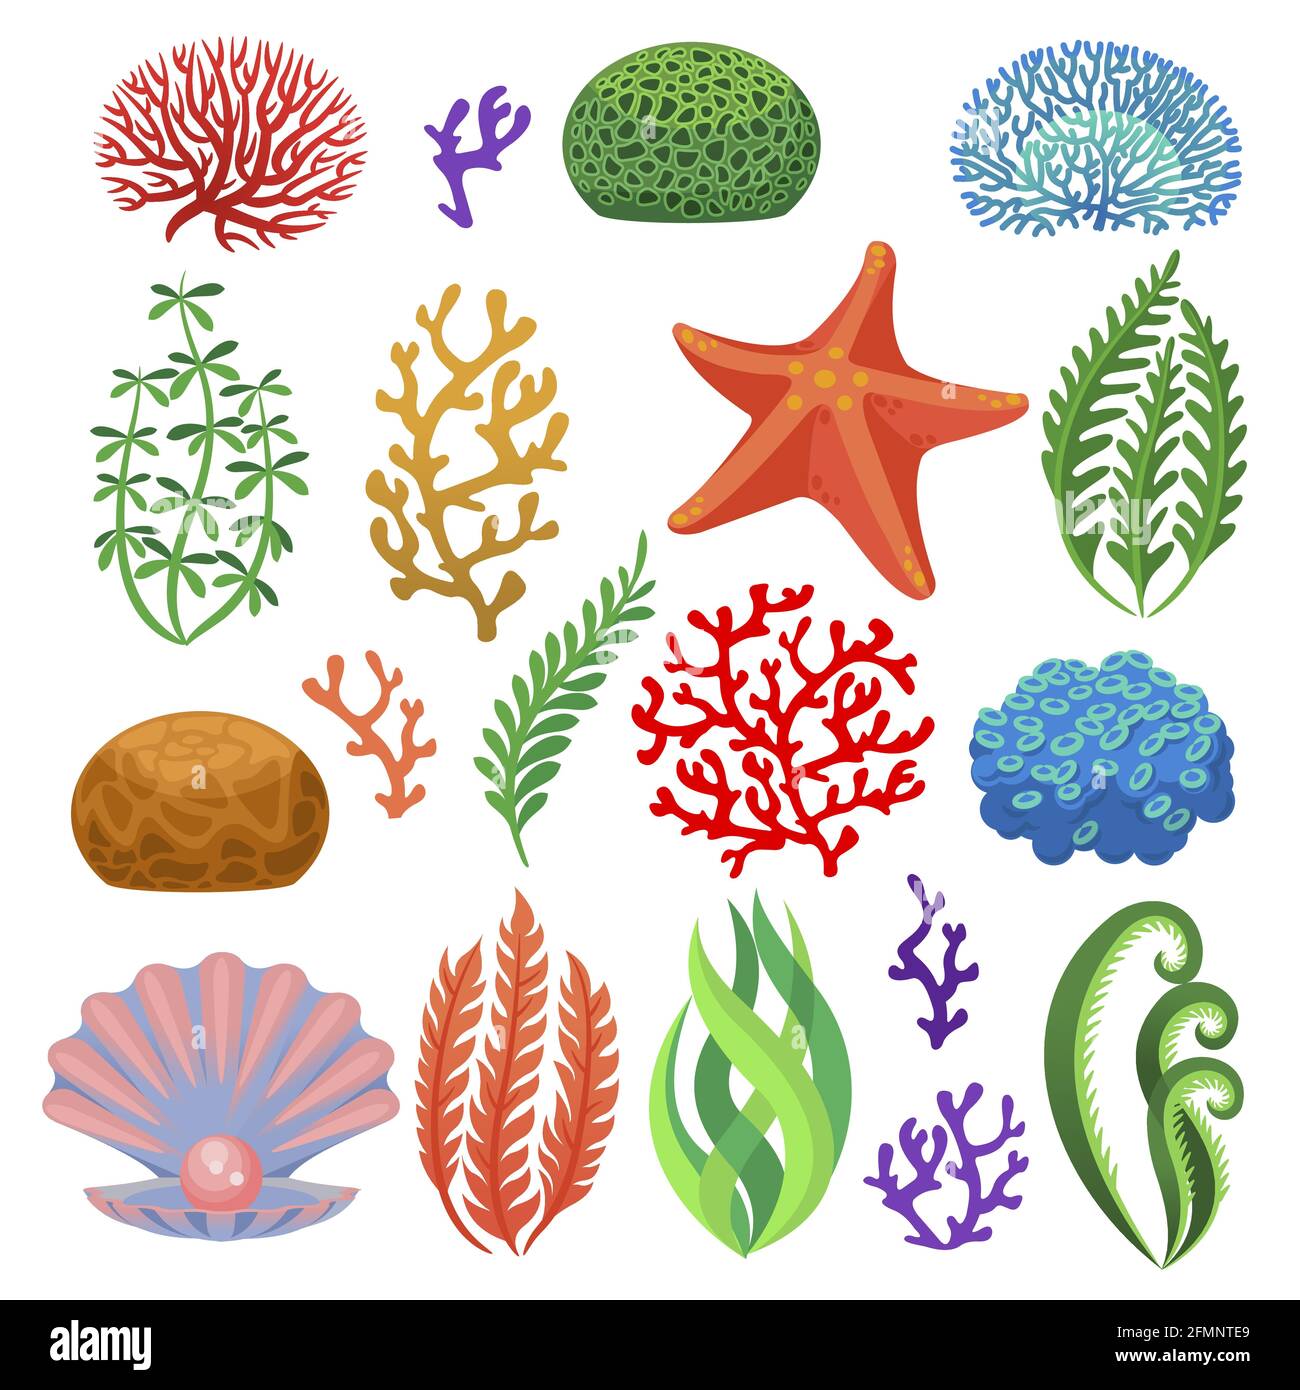 Alghe. Cartoon coralli subacquei colorati, piante. Acquario, flora oceanica e sottomarina, stelle marine e conchiglia isolato insieme vettoriale. Piante marine tropicali, diversi elementi naturali Illustrazione Vettoriale